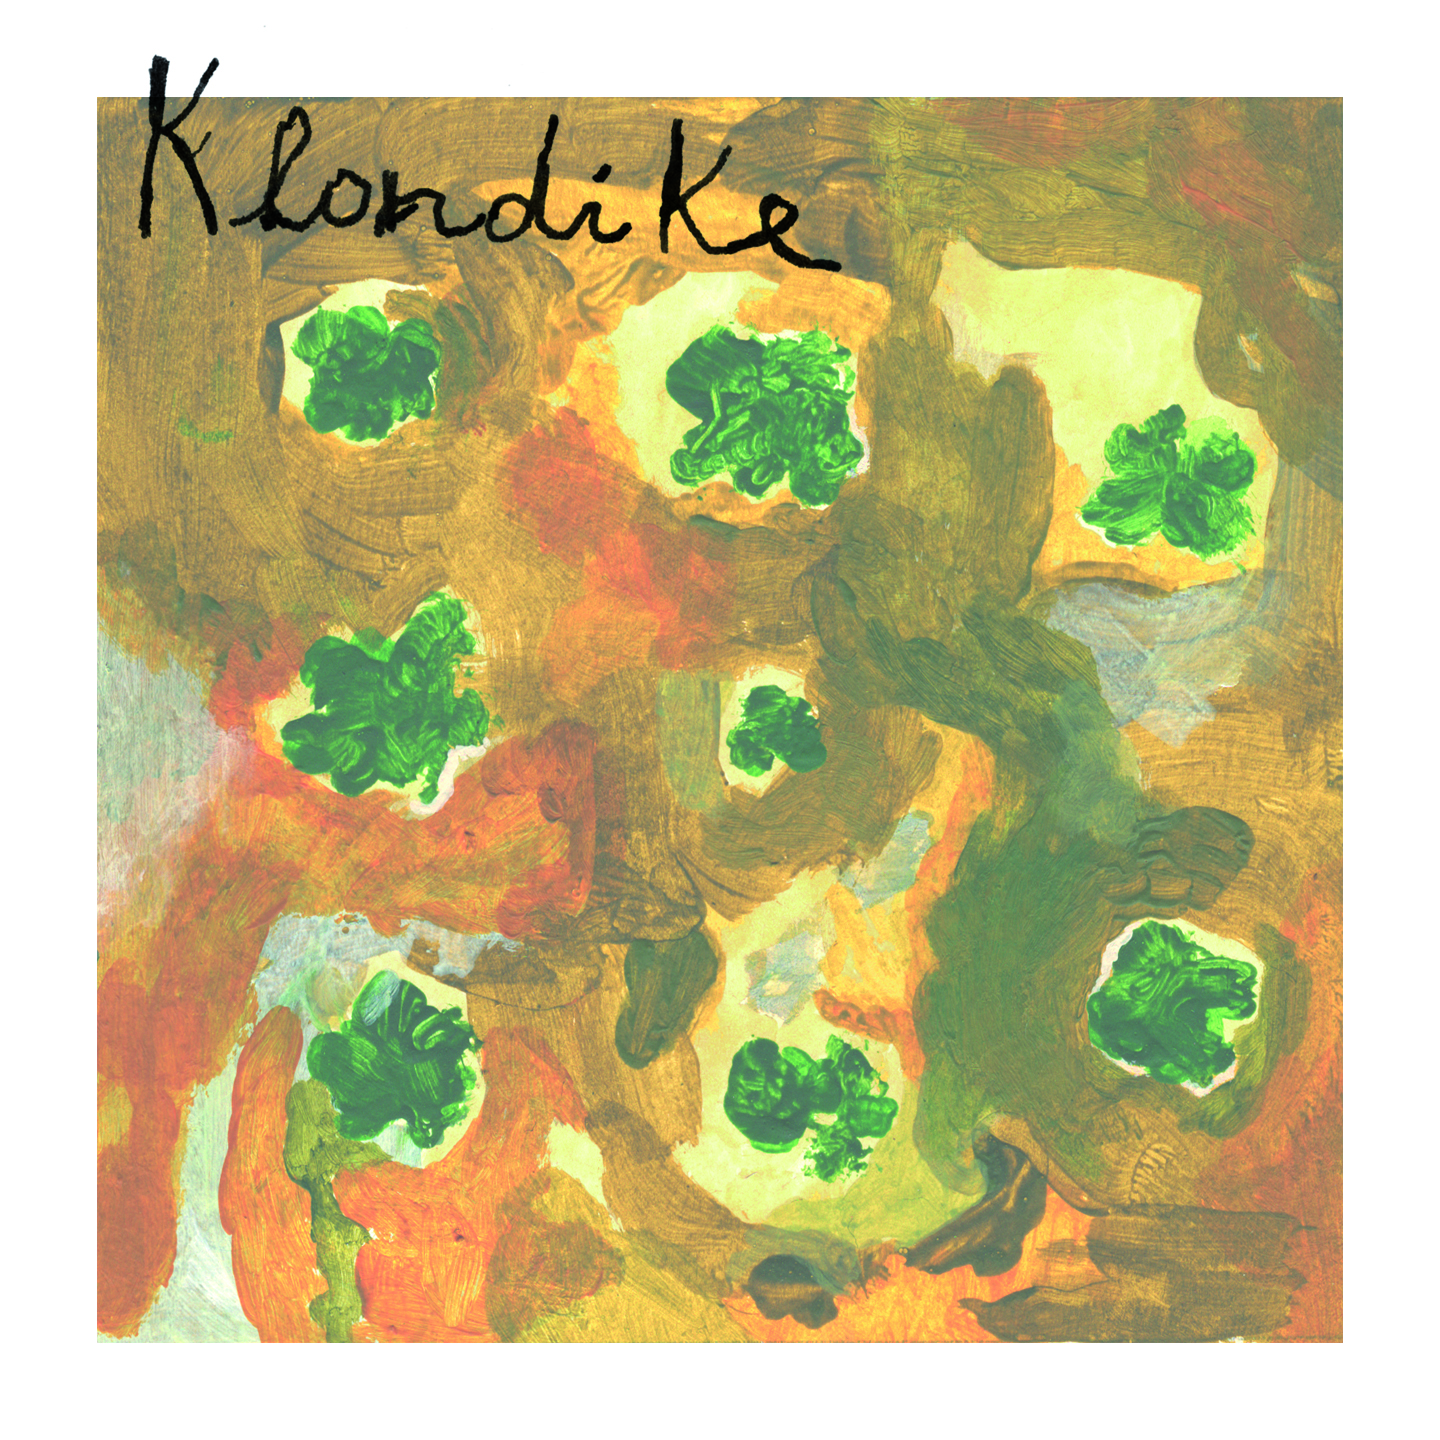 Klondike - La notte delle streghe